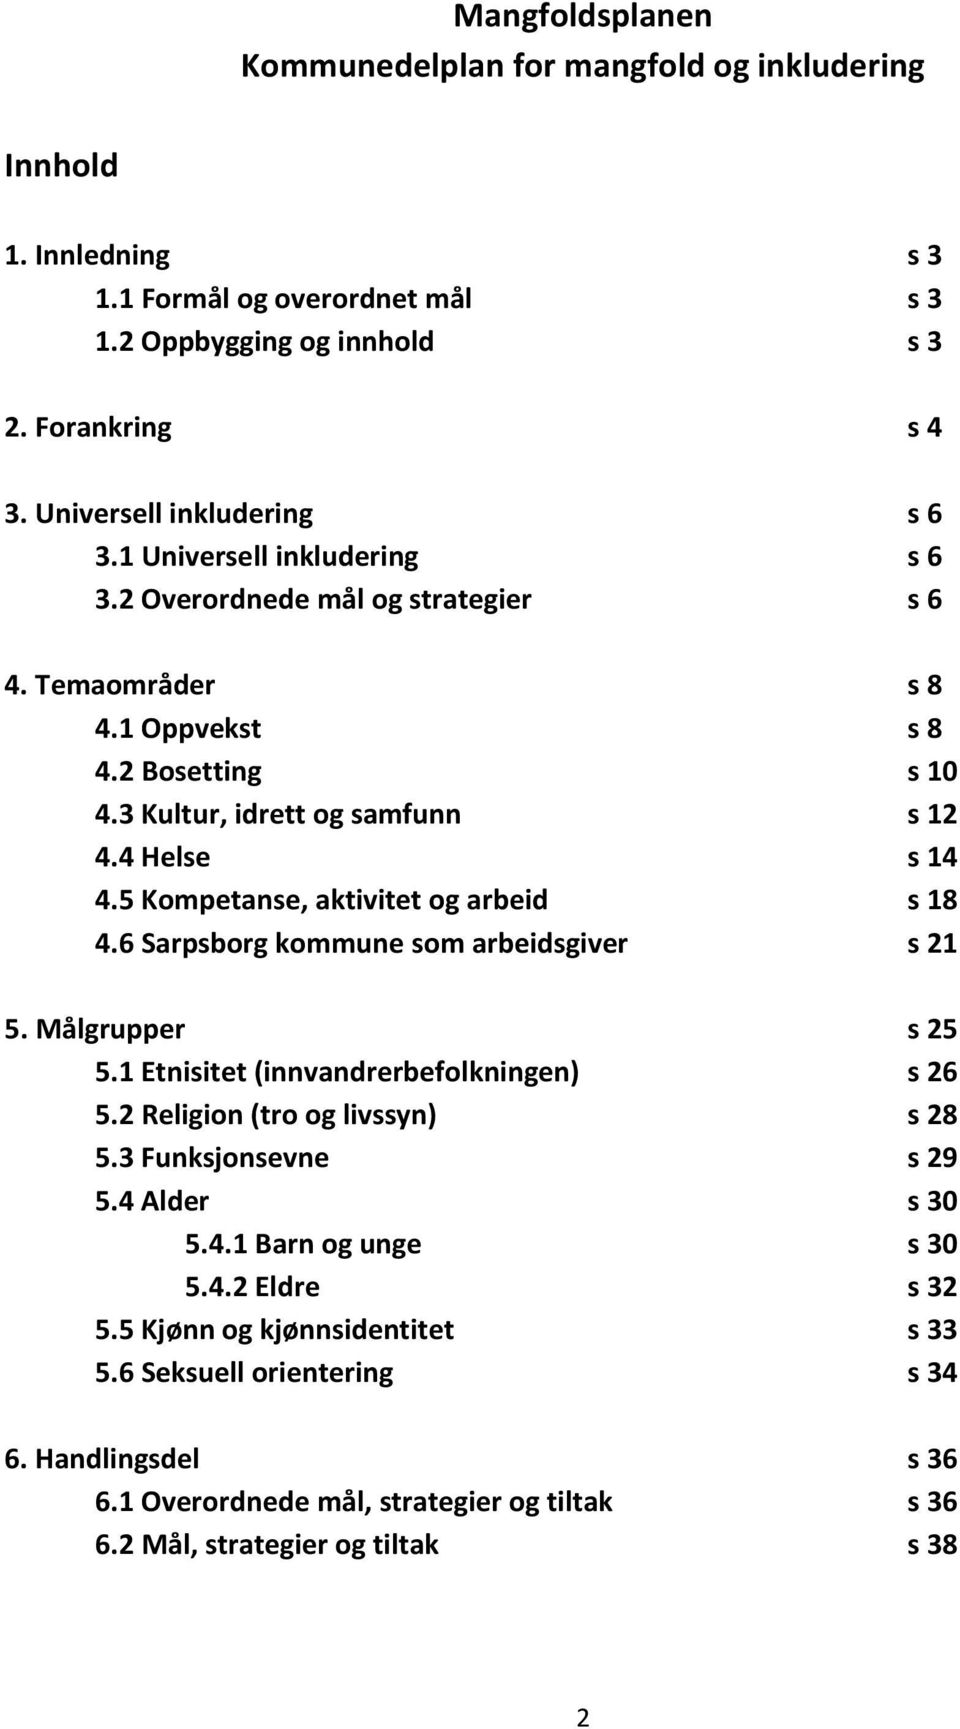 5 Kompetanse, aktivitet og arbeid s 18 4.6 Sarpsborg kommune som arbeidsgiver s 21 5. Målgrupper s 25 5.1 Etnisitet (innvandrerbefolkningen) s 26 5.2 Religion (tro og livssyn) s 28 5.